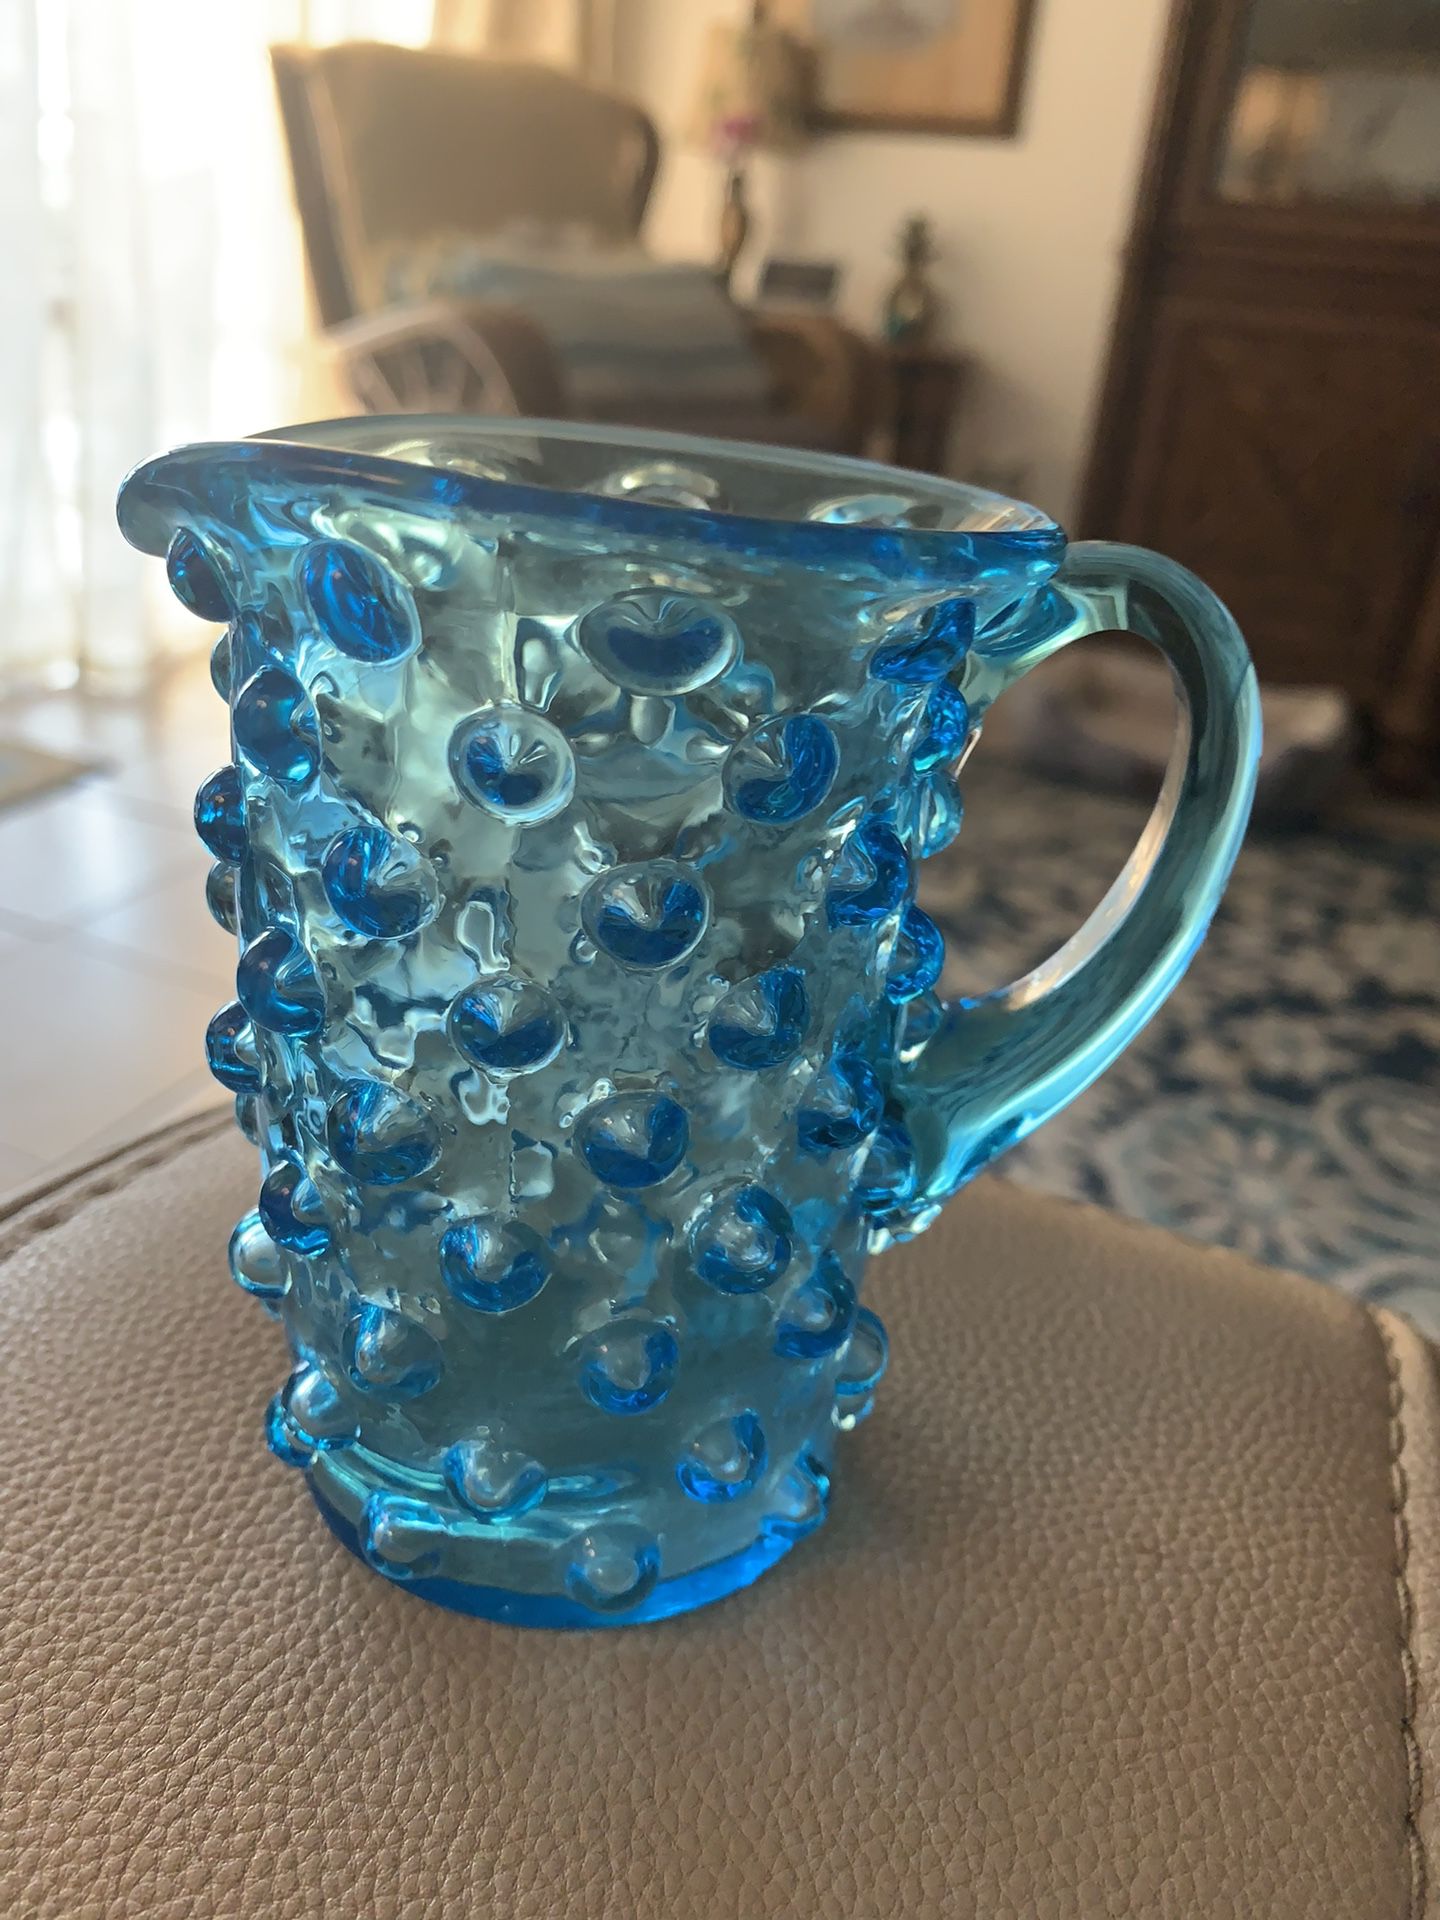 Vintage blue glass hobnail 4” creamer or pitcher No cracks or damage